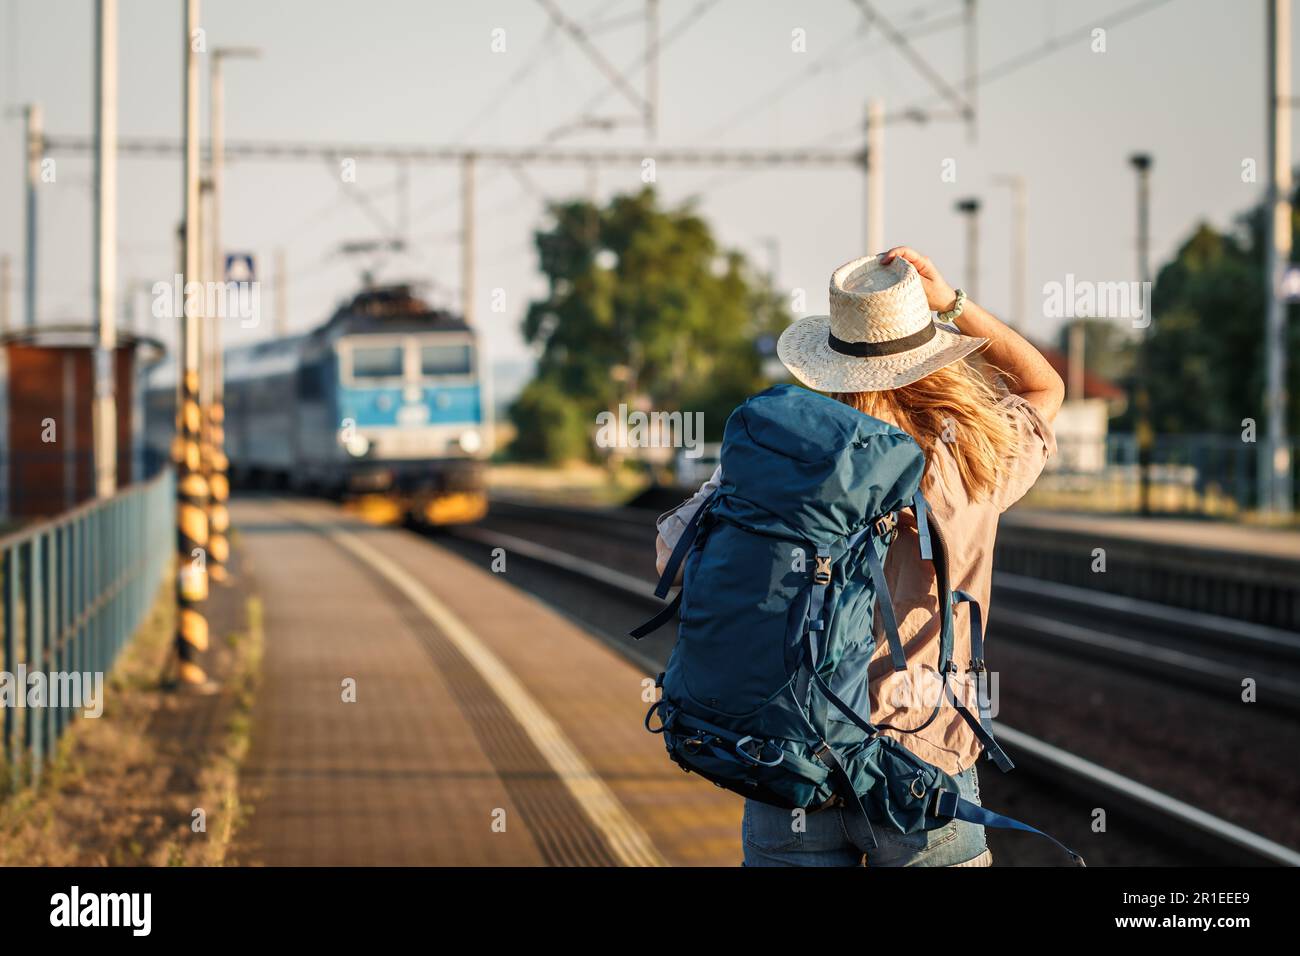 Weibliche Rucksacktouristin, die allein mit dem Zug reist. Frau mit Rucksack und Strohhut, die am Bahnhofsplatz steht und auf den ankommenden Zug schaut Stockfoto